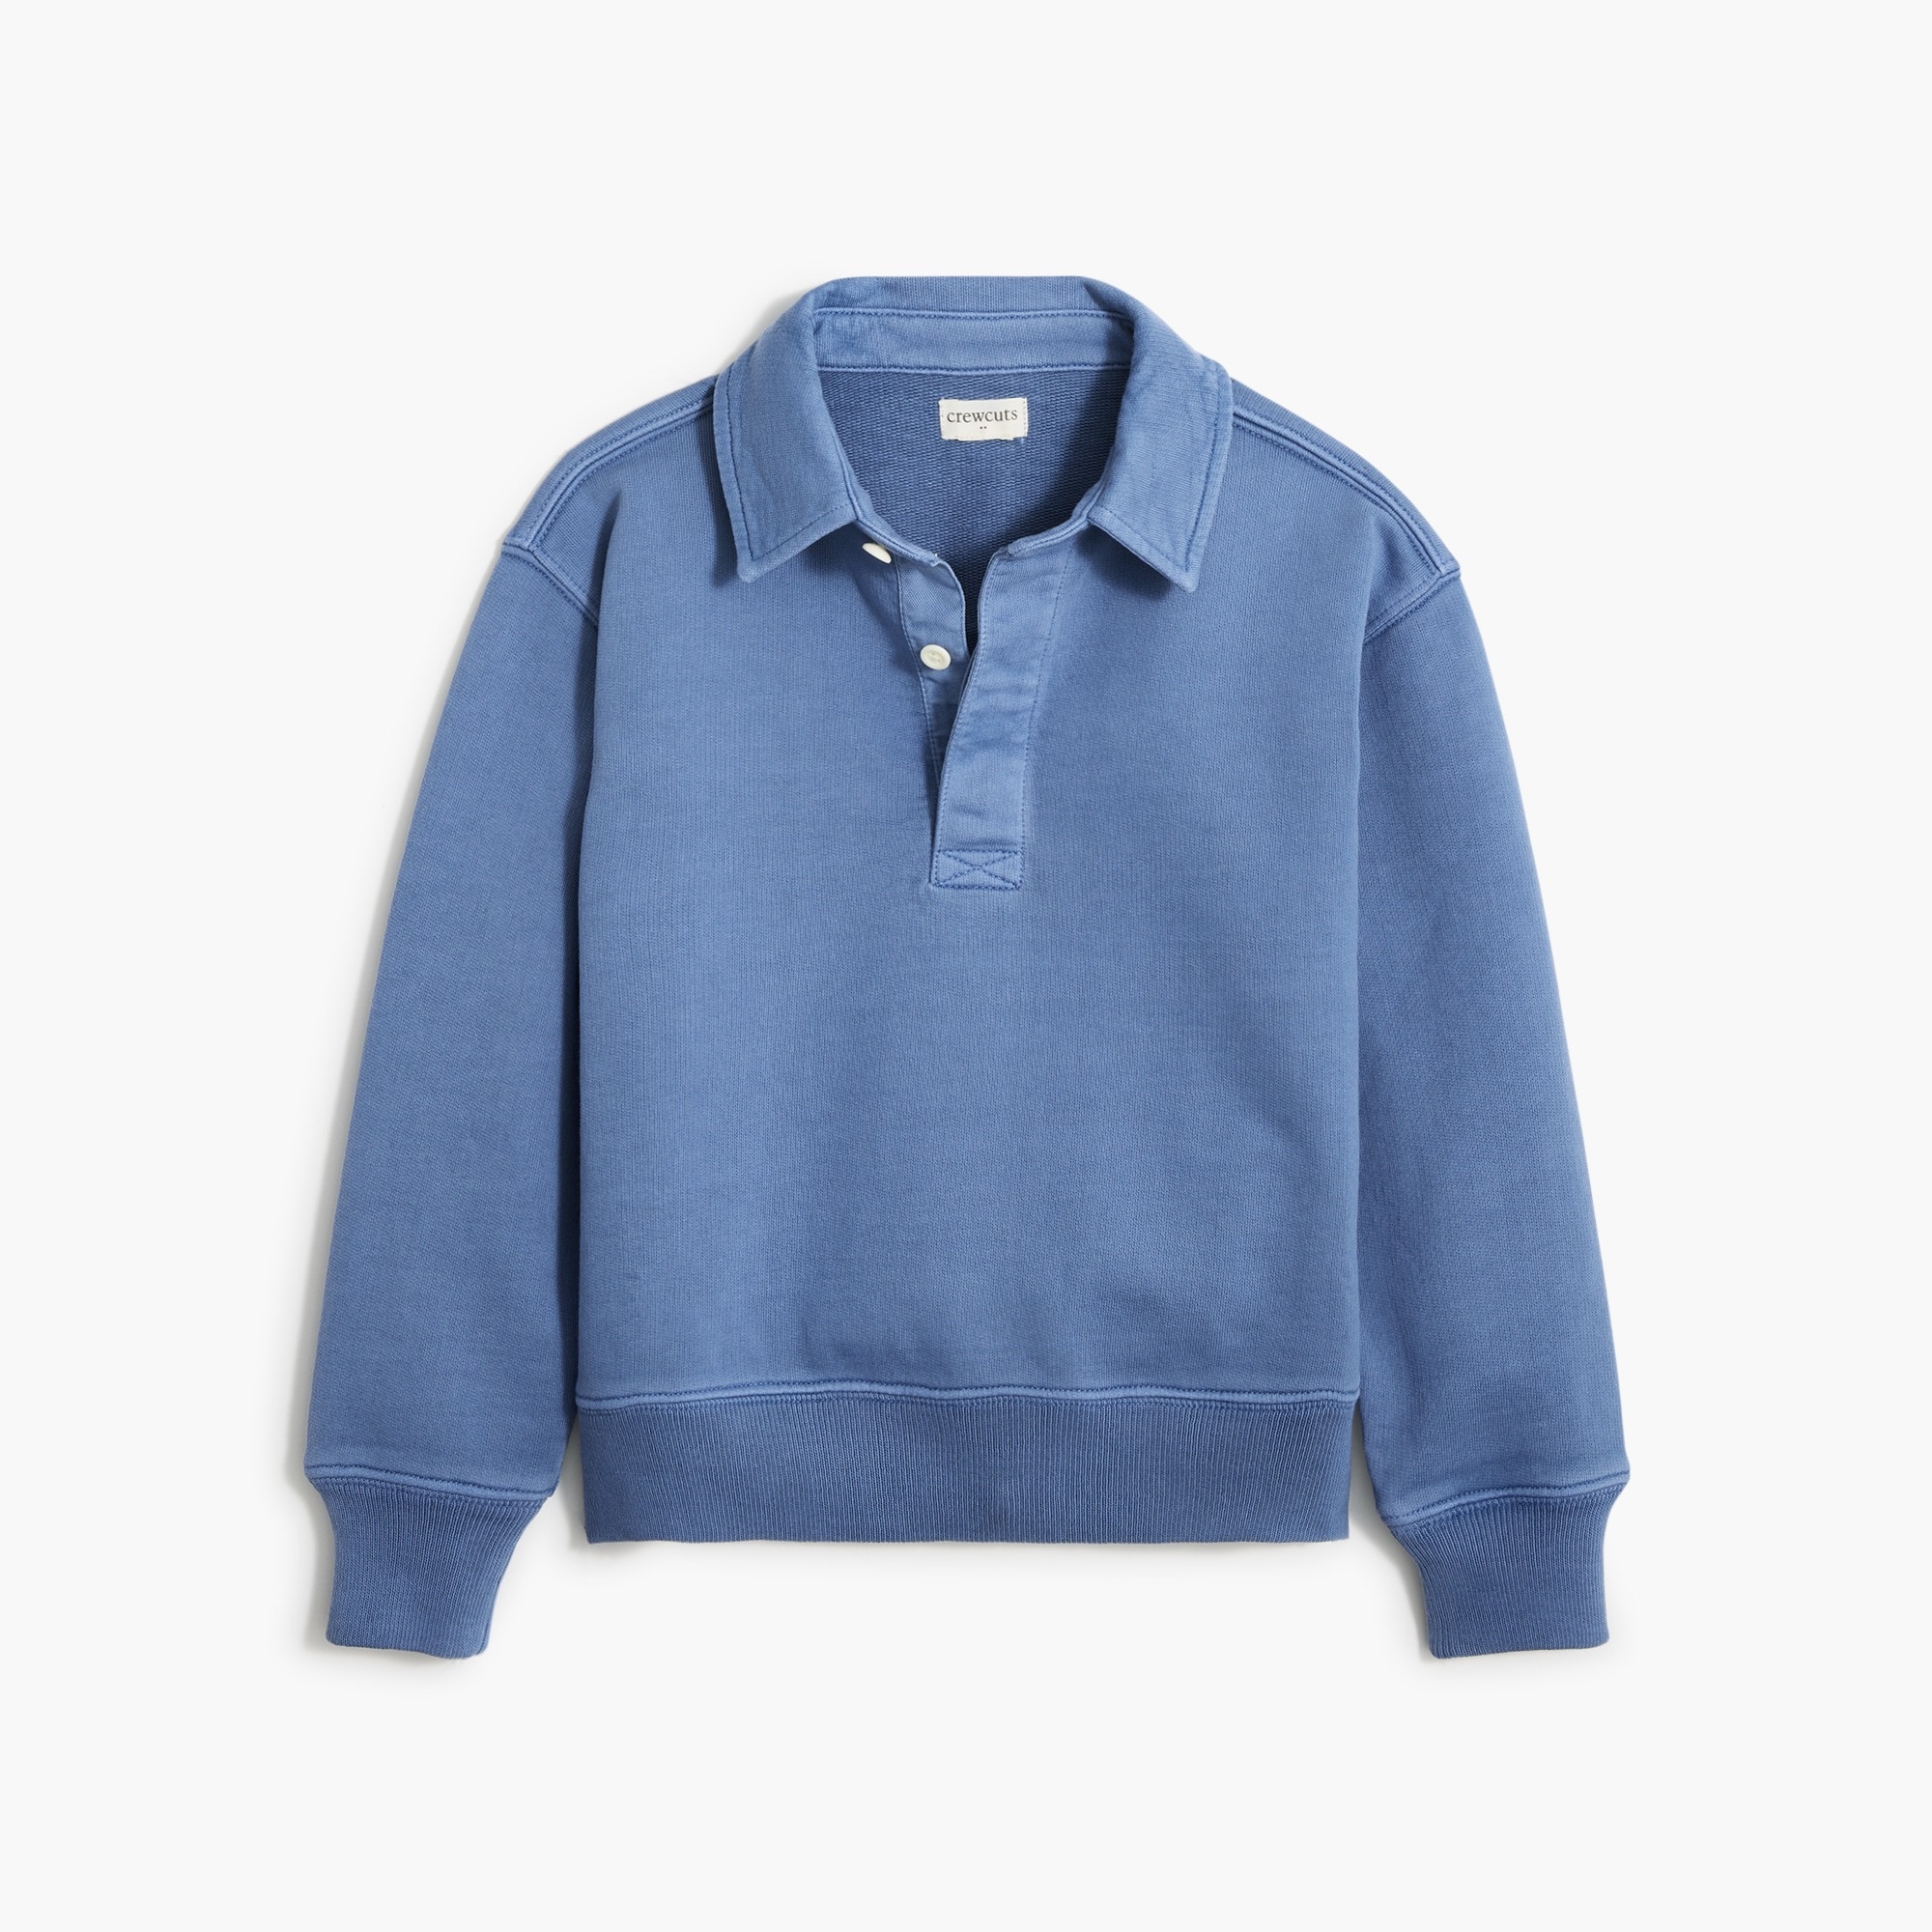 Boys' garment-dyed rugby sweatshirt